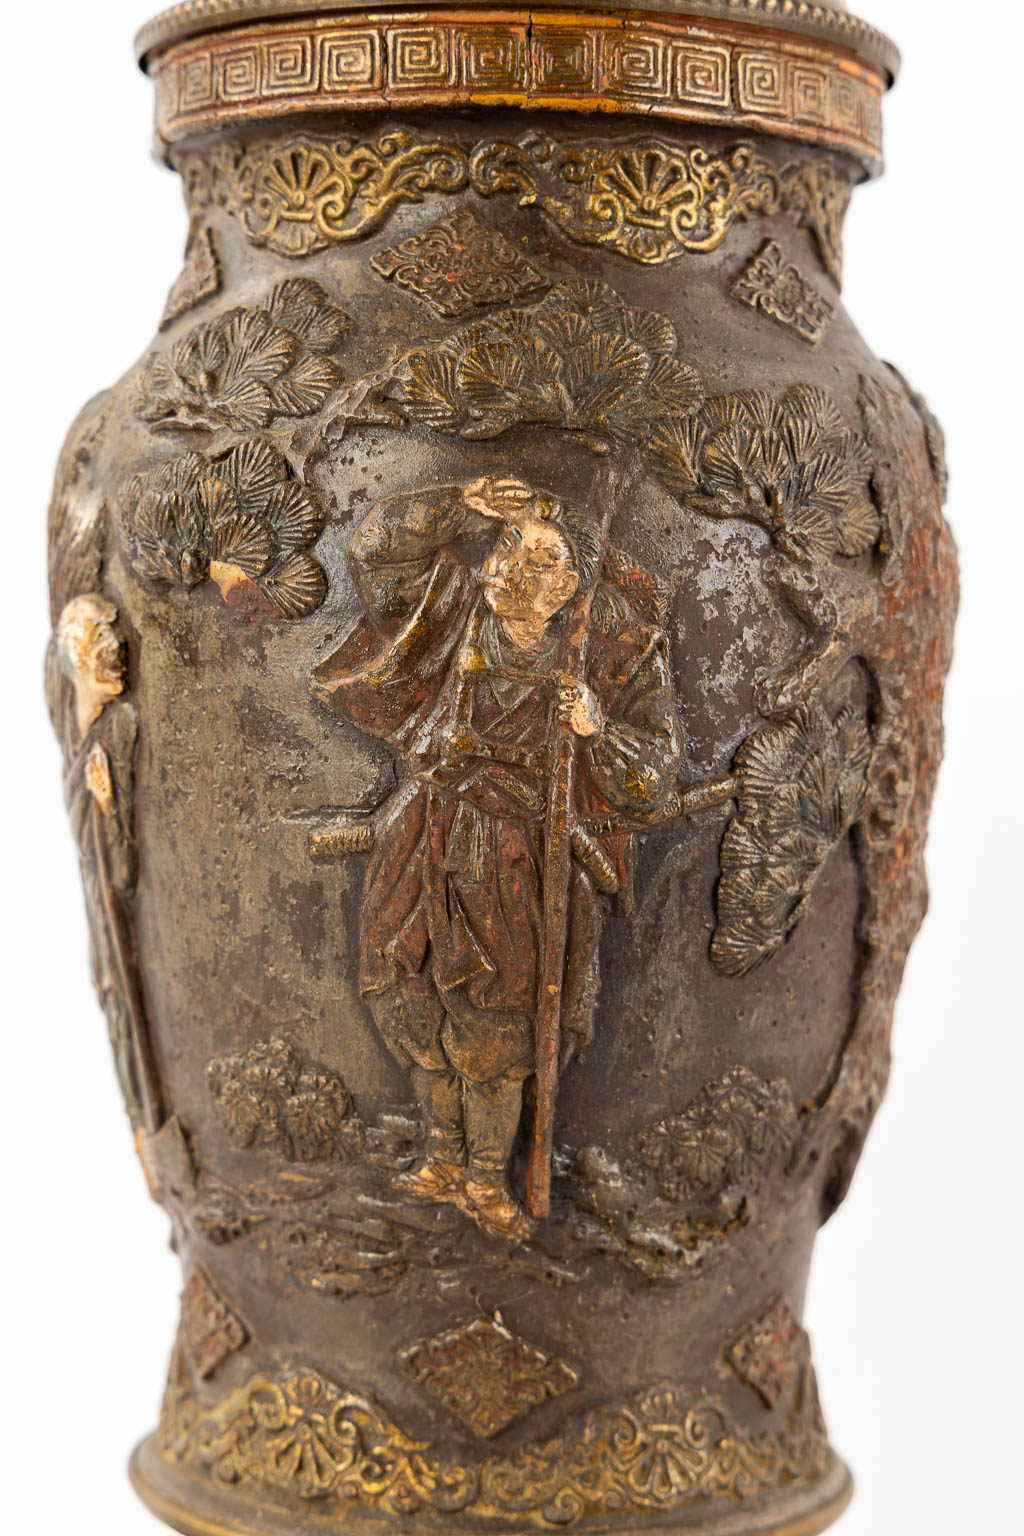 Een Oosters paar olielampen, terracotta gemonteerd met brons. Circa 1900. (H:66 x D:18 cm)